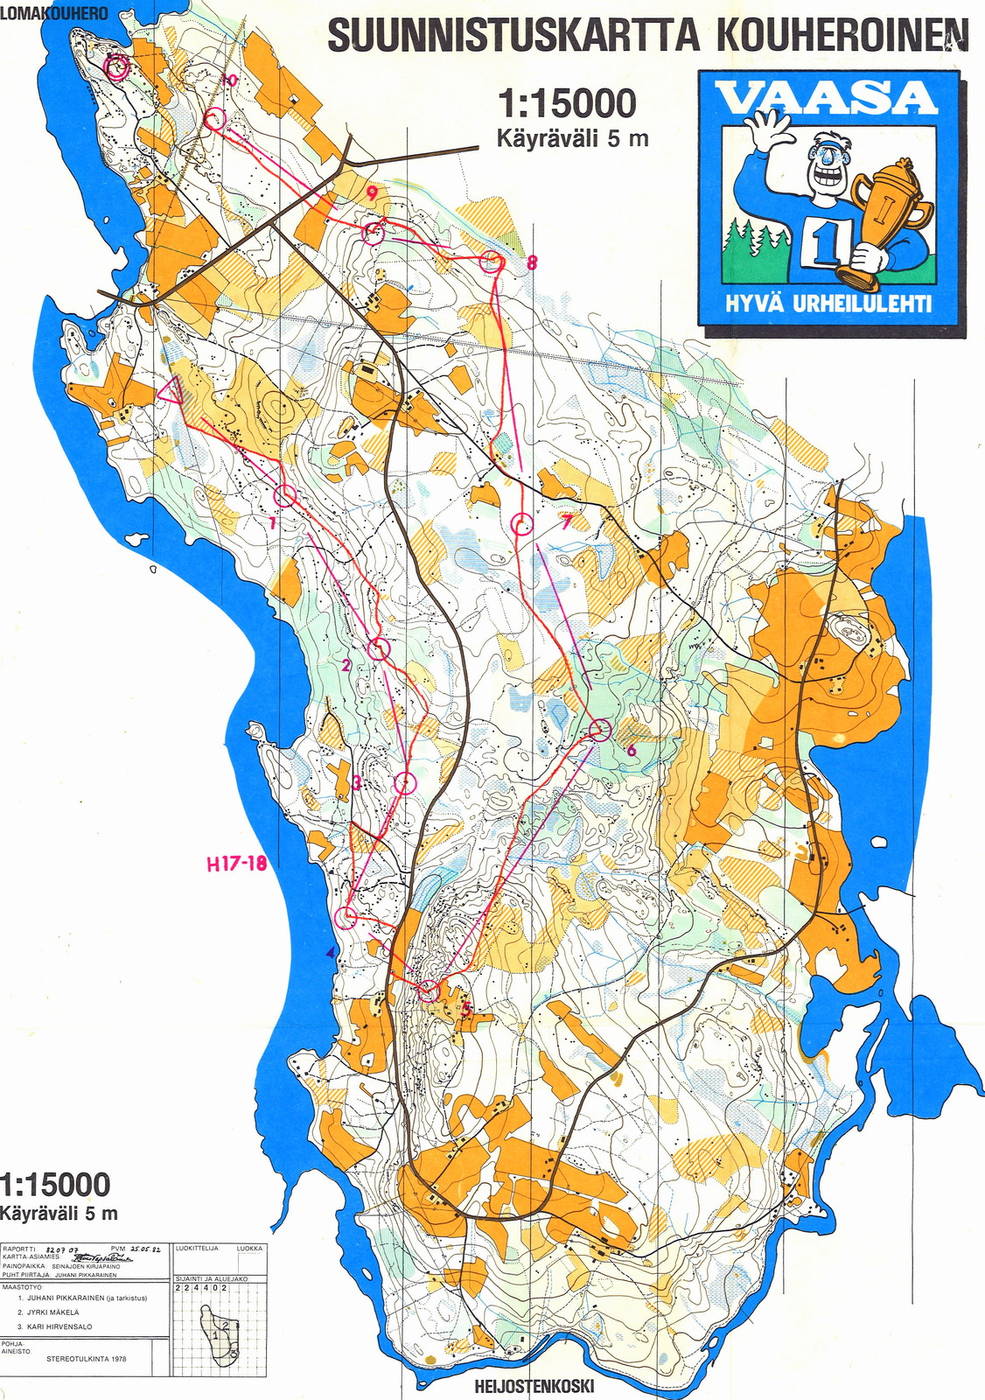 Karstulan kansalliset, H17-18, 7,8 km (26/06/1982)